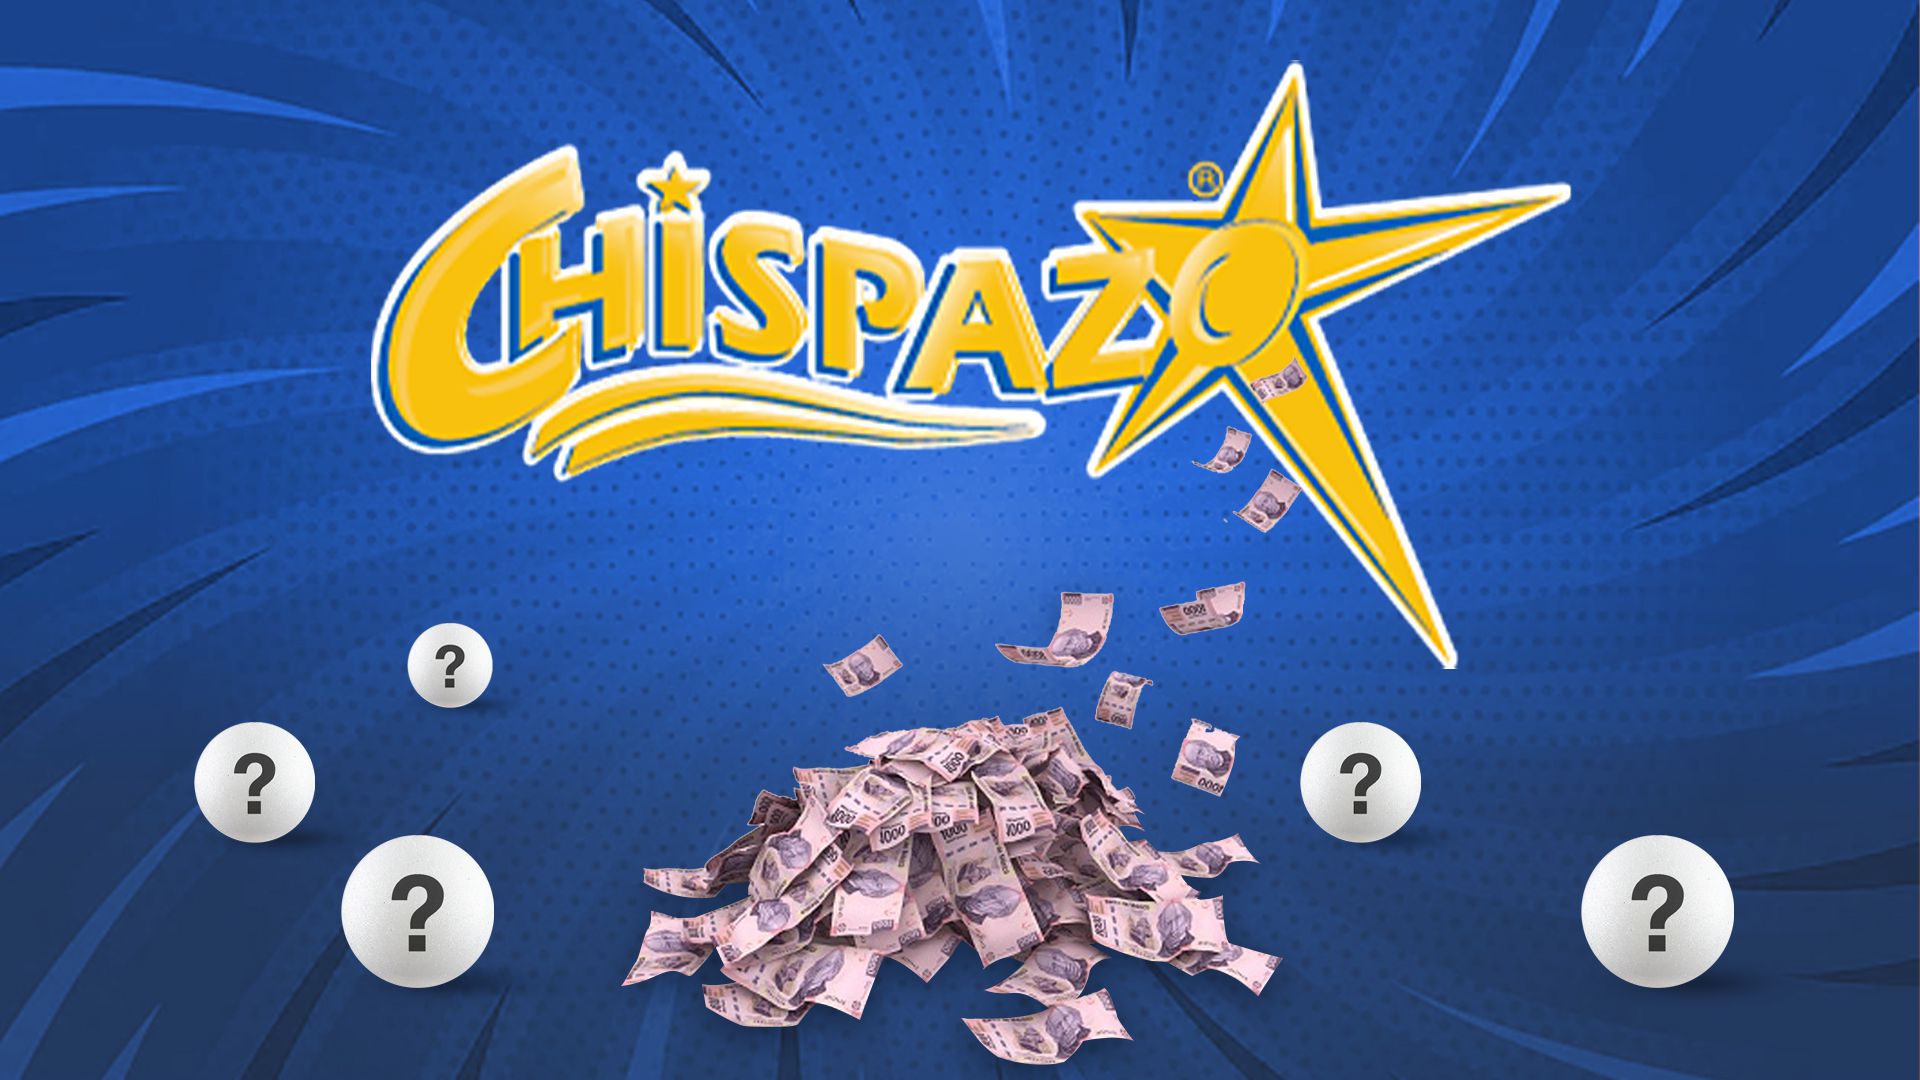 Resultados de Chispazo: ganadores y números premiados